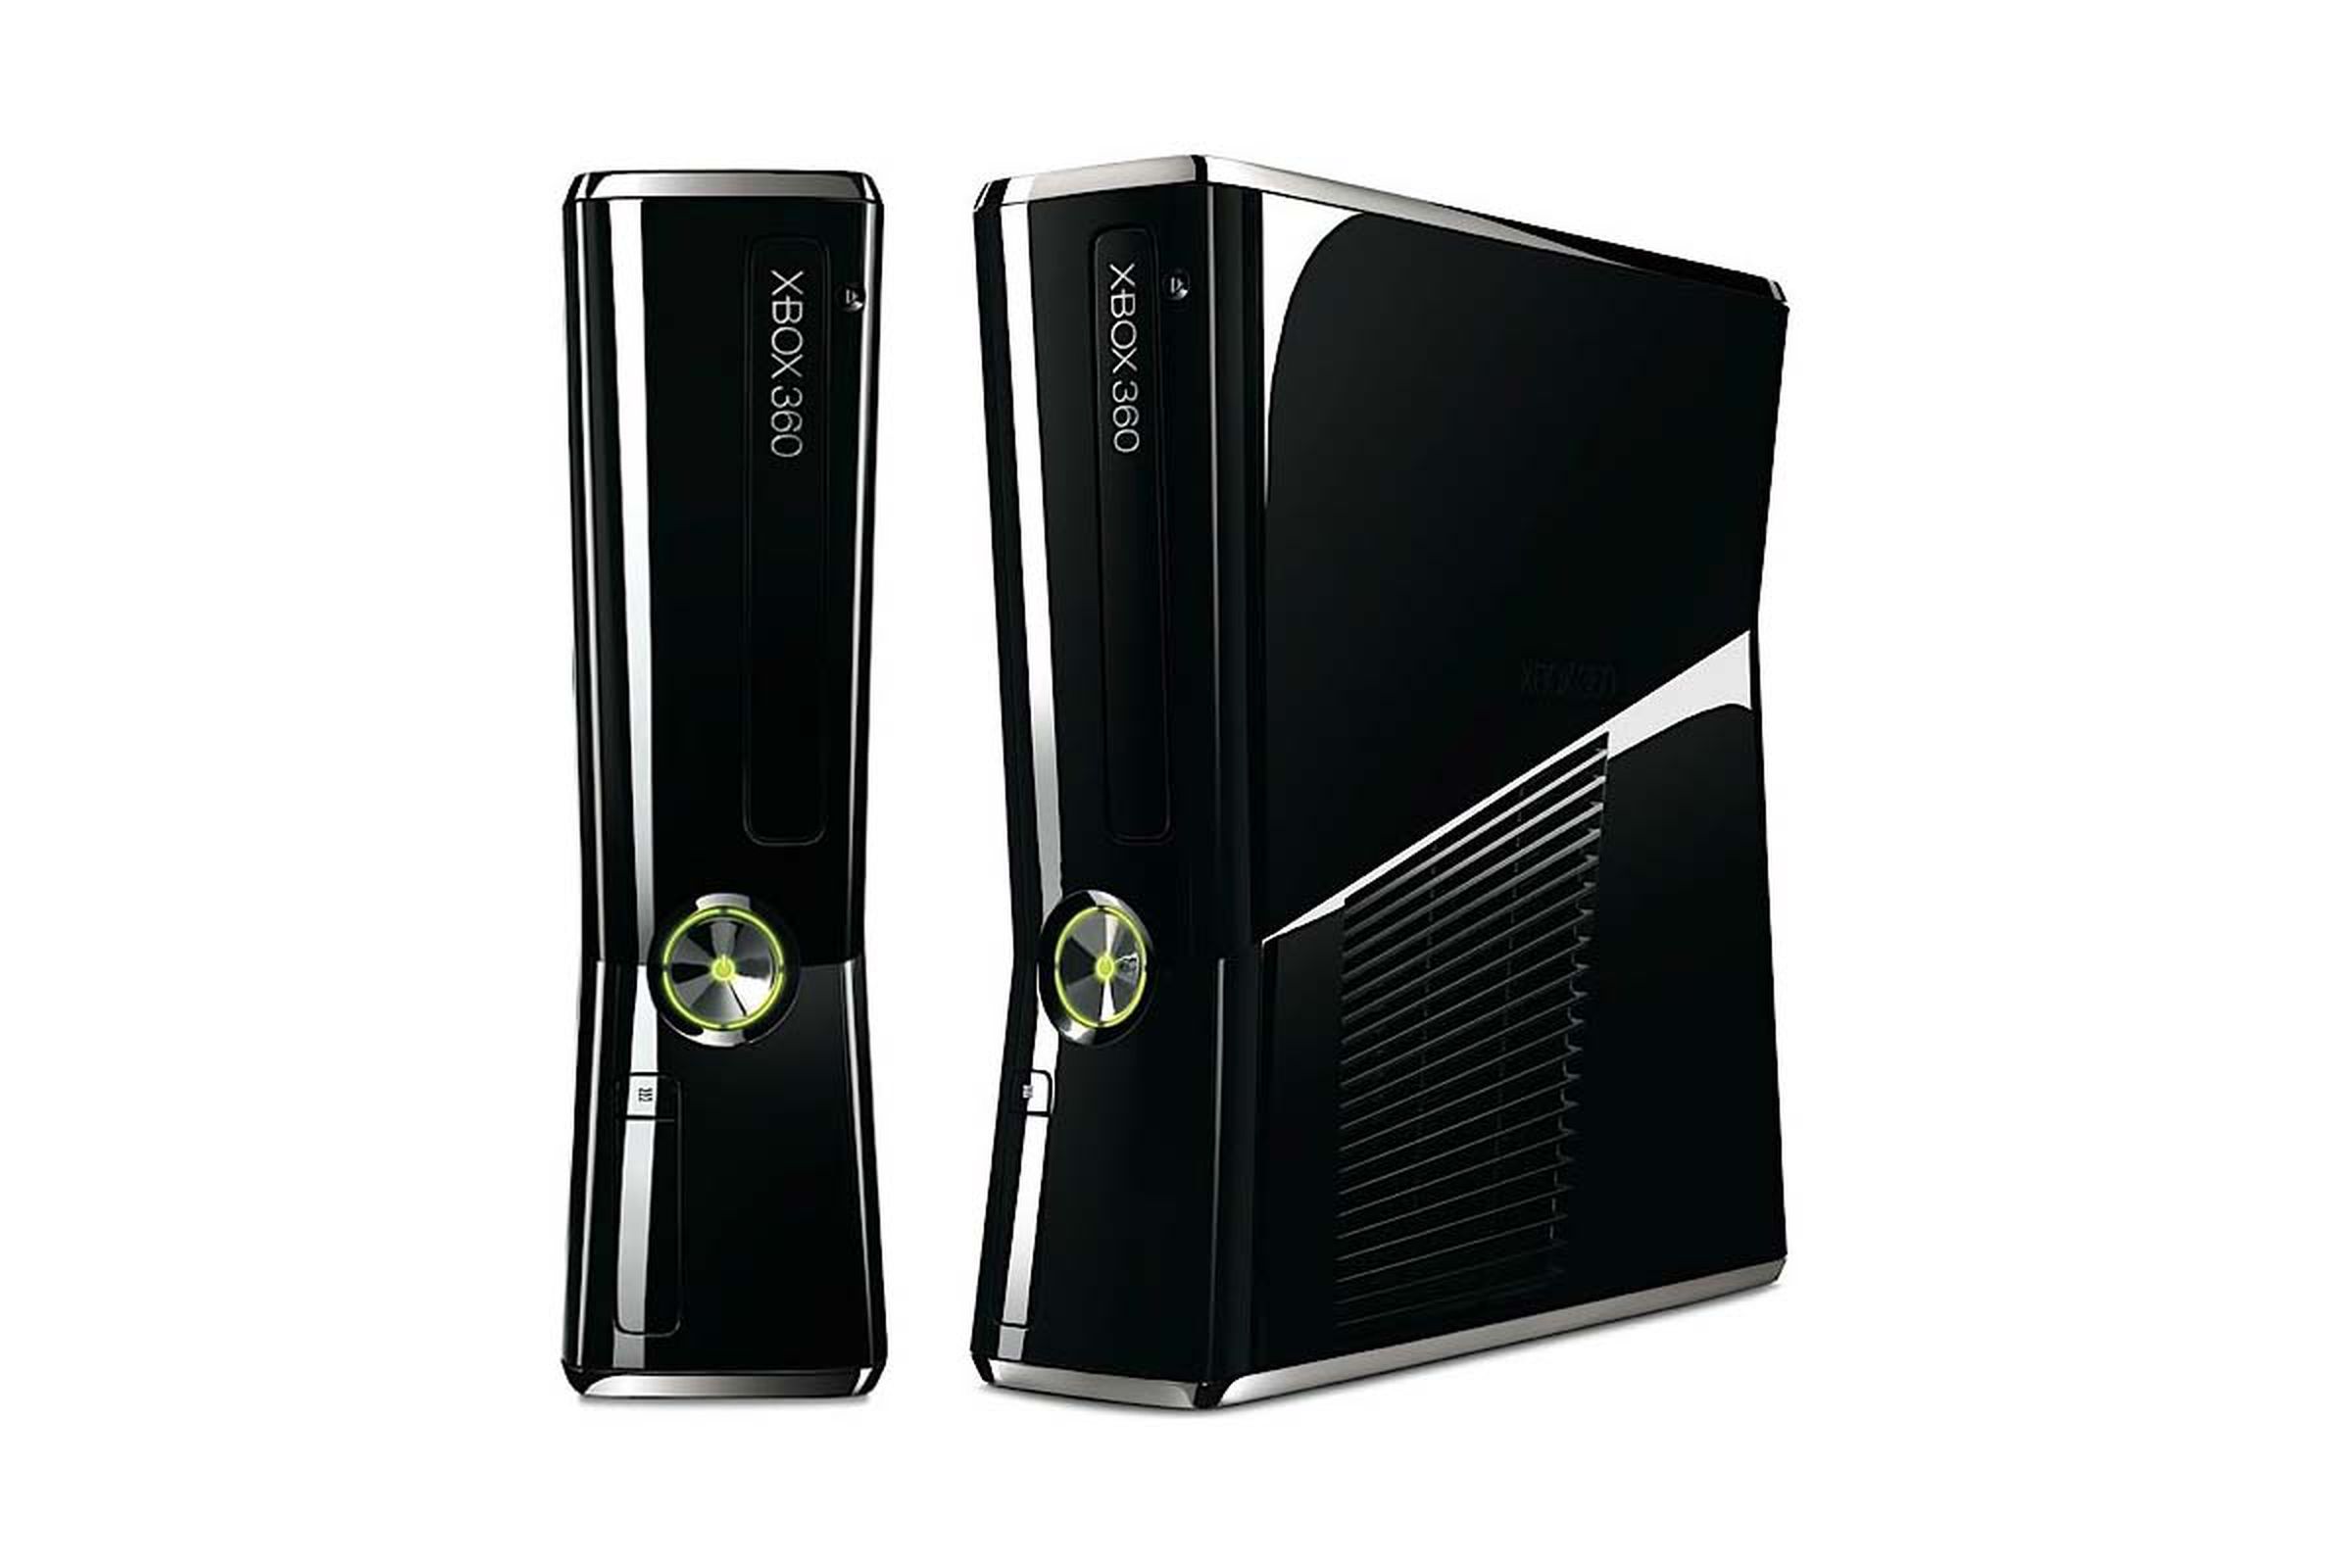 The Xbox 360 S.